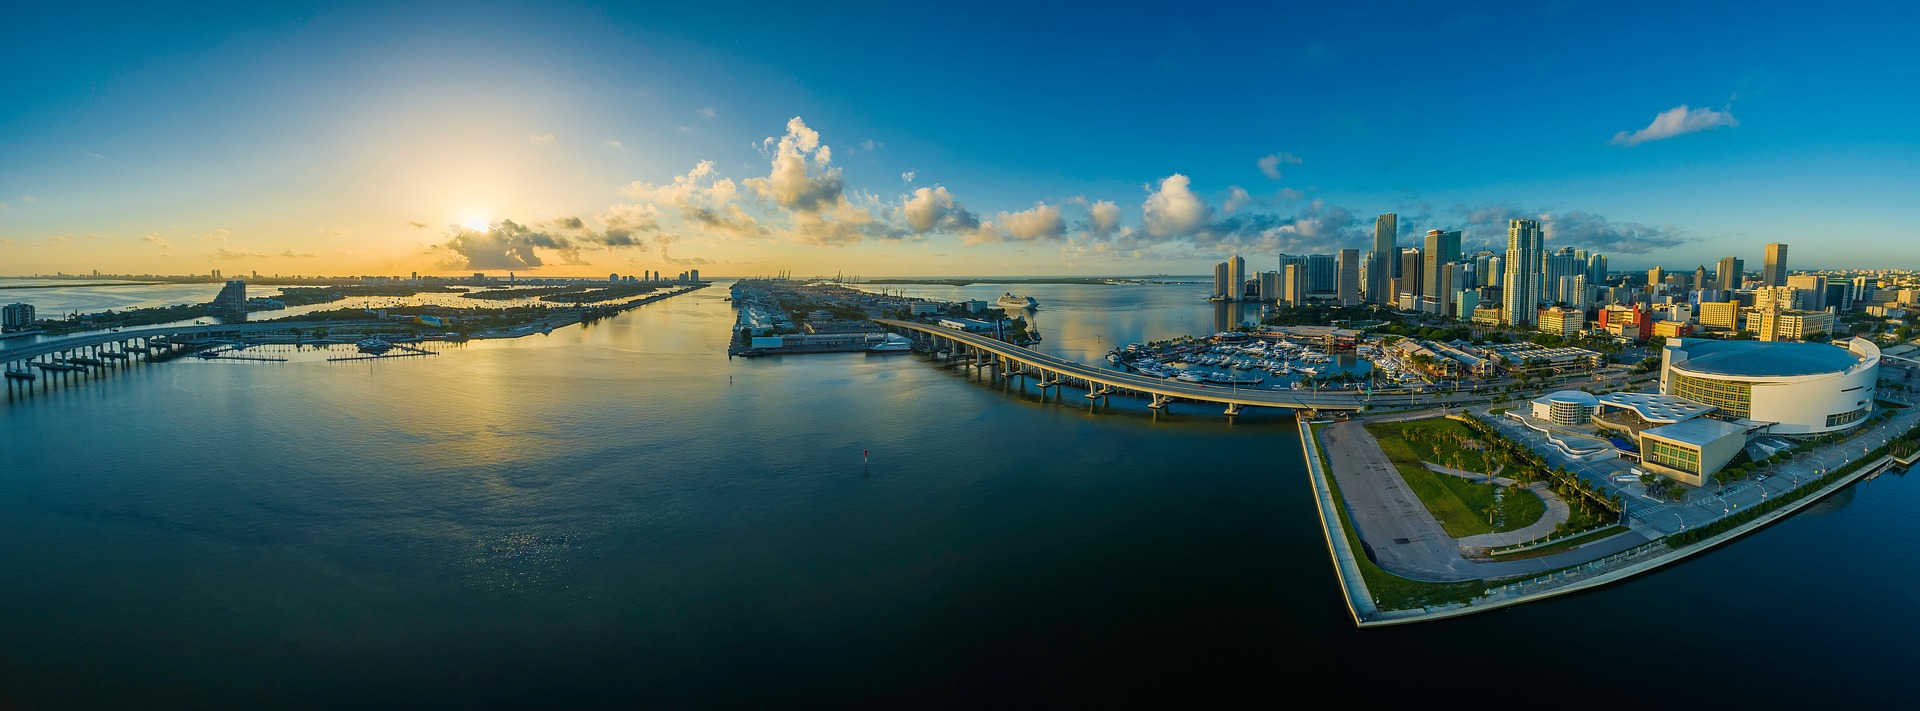 Panorama of Miami